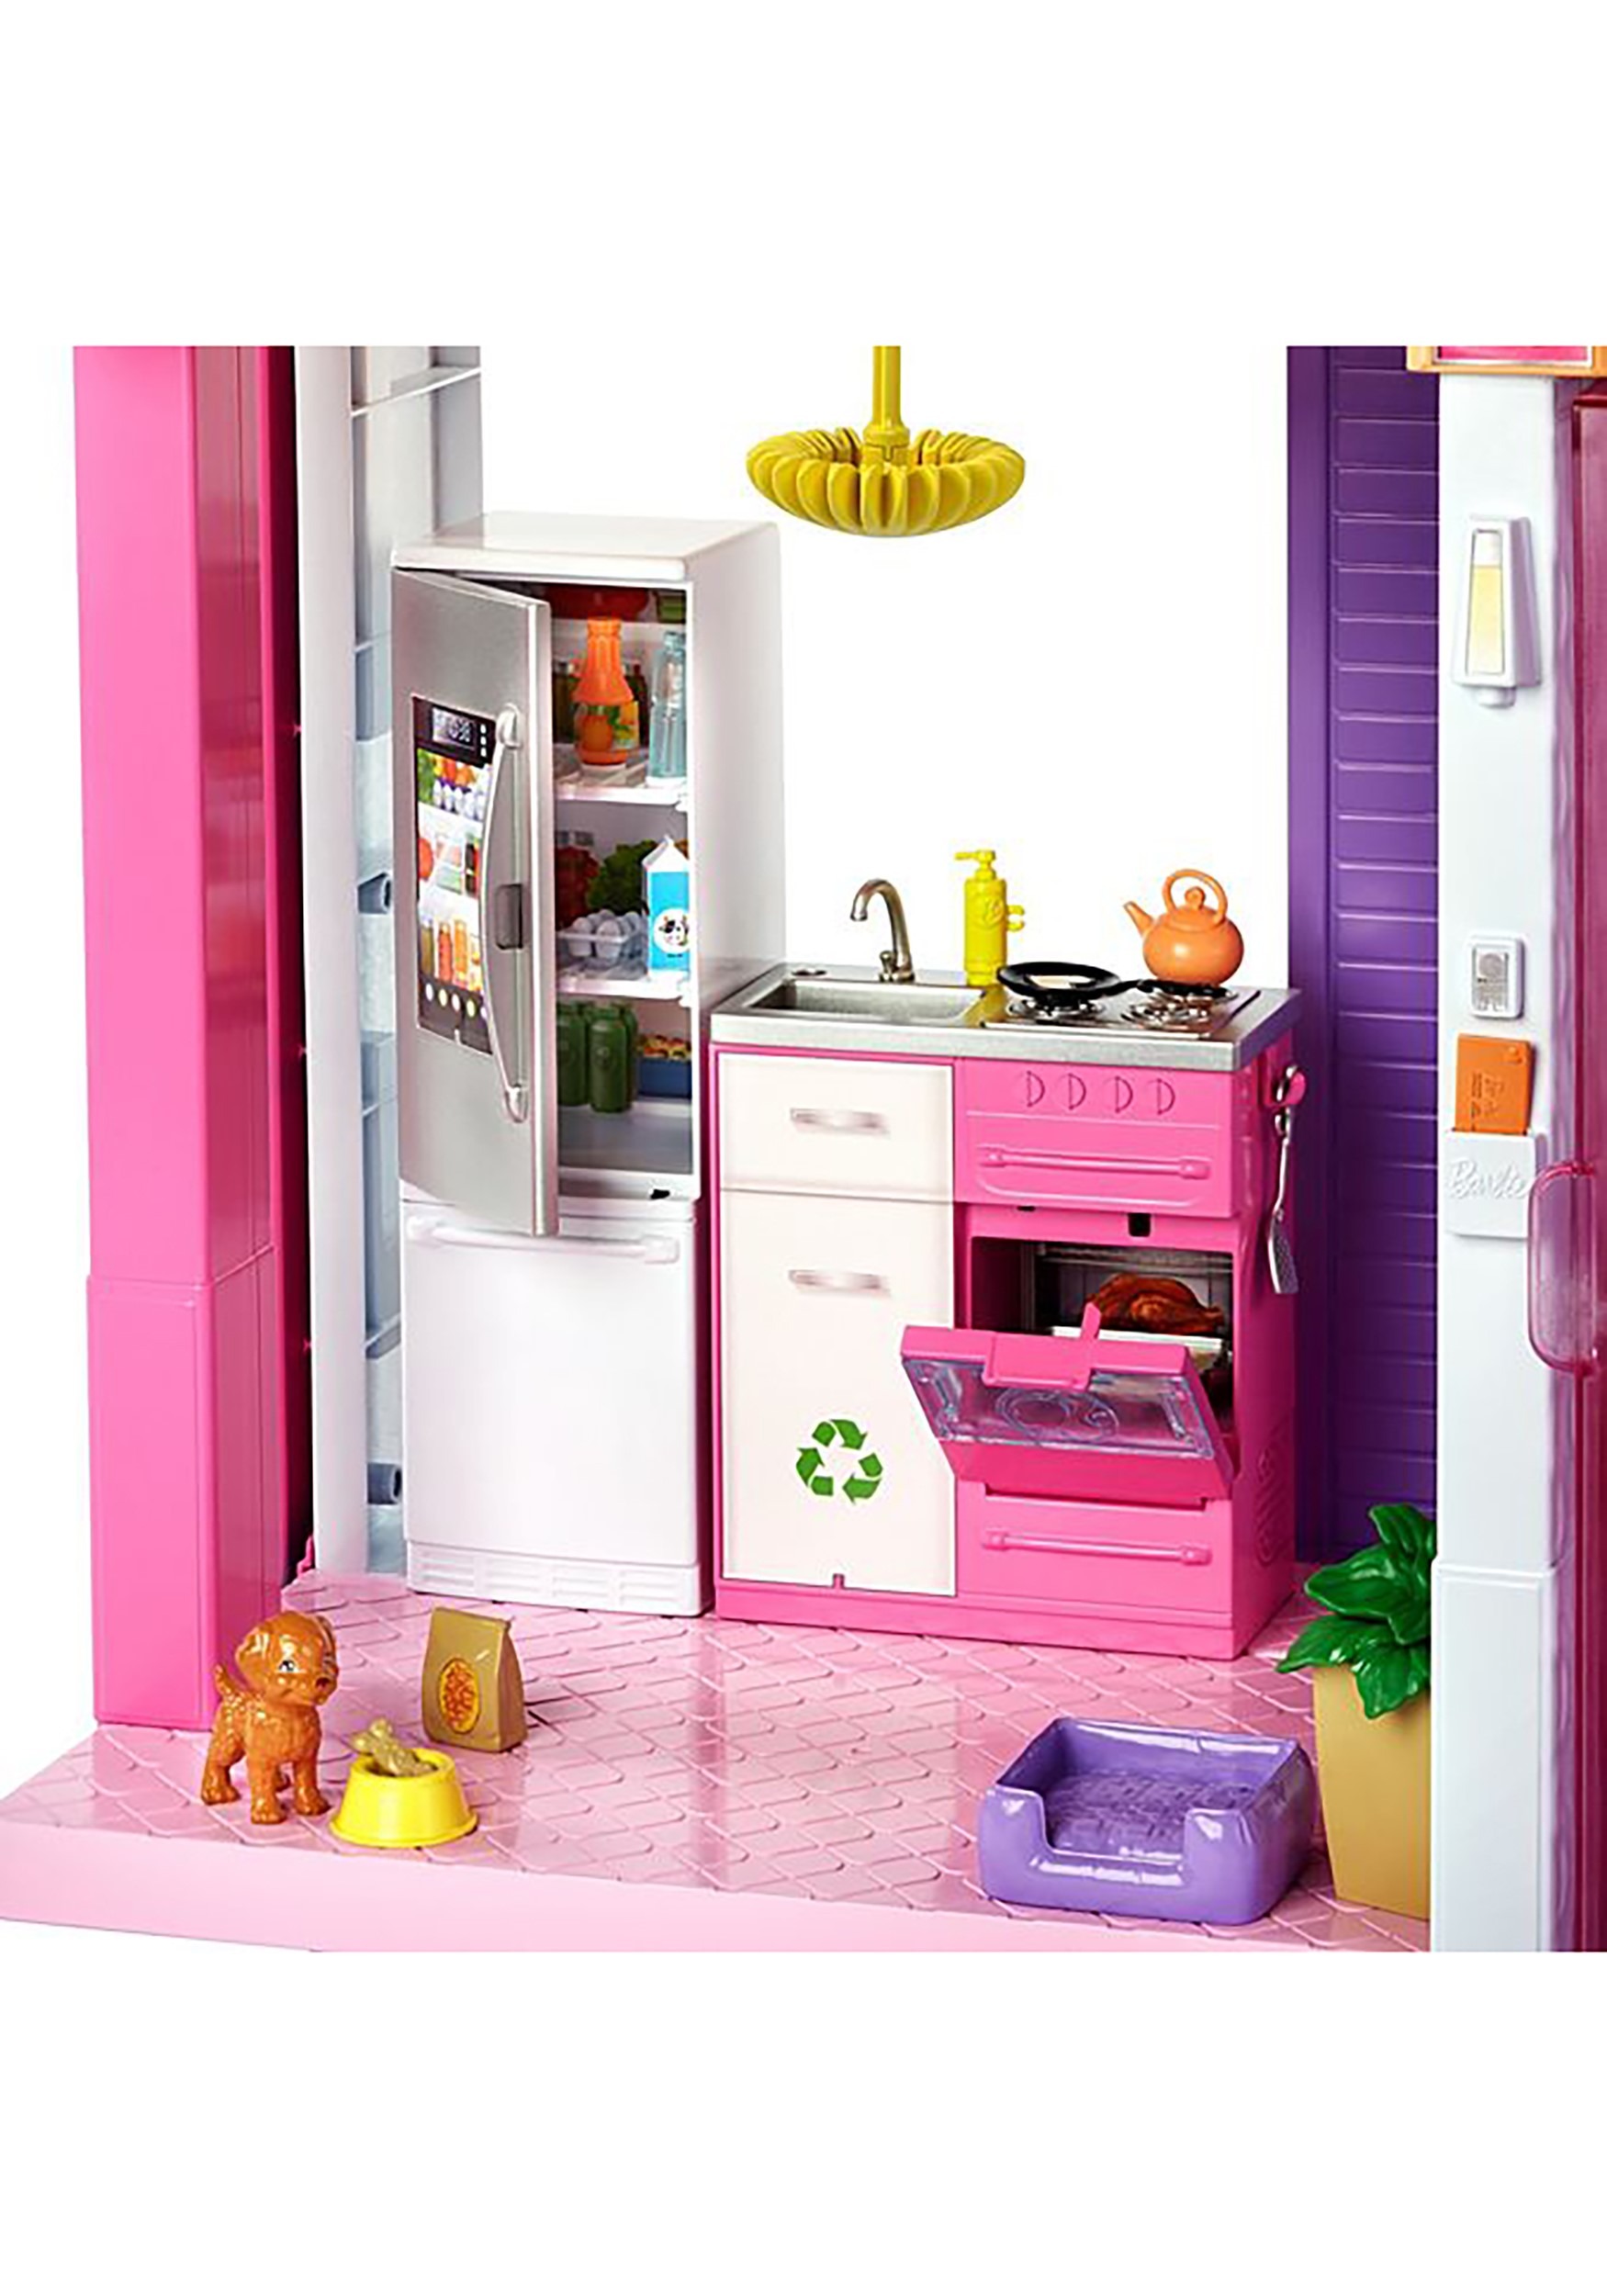 where can i get a barbie dream house